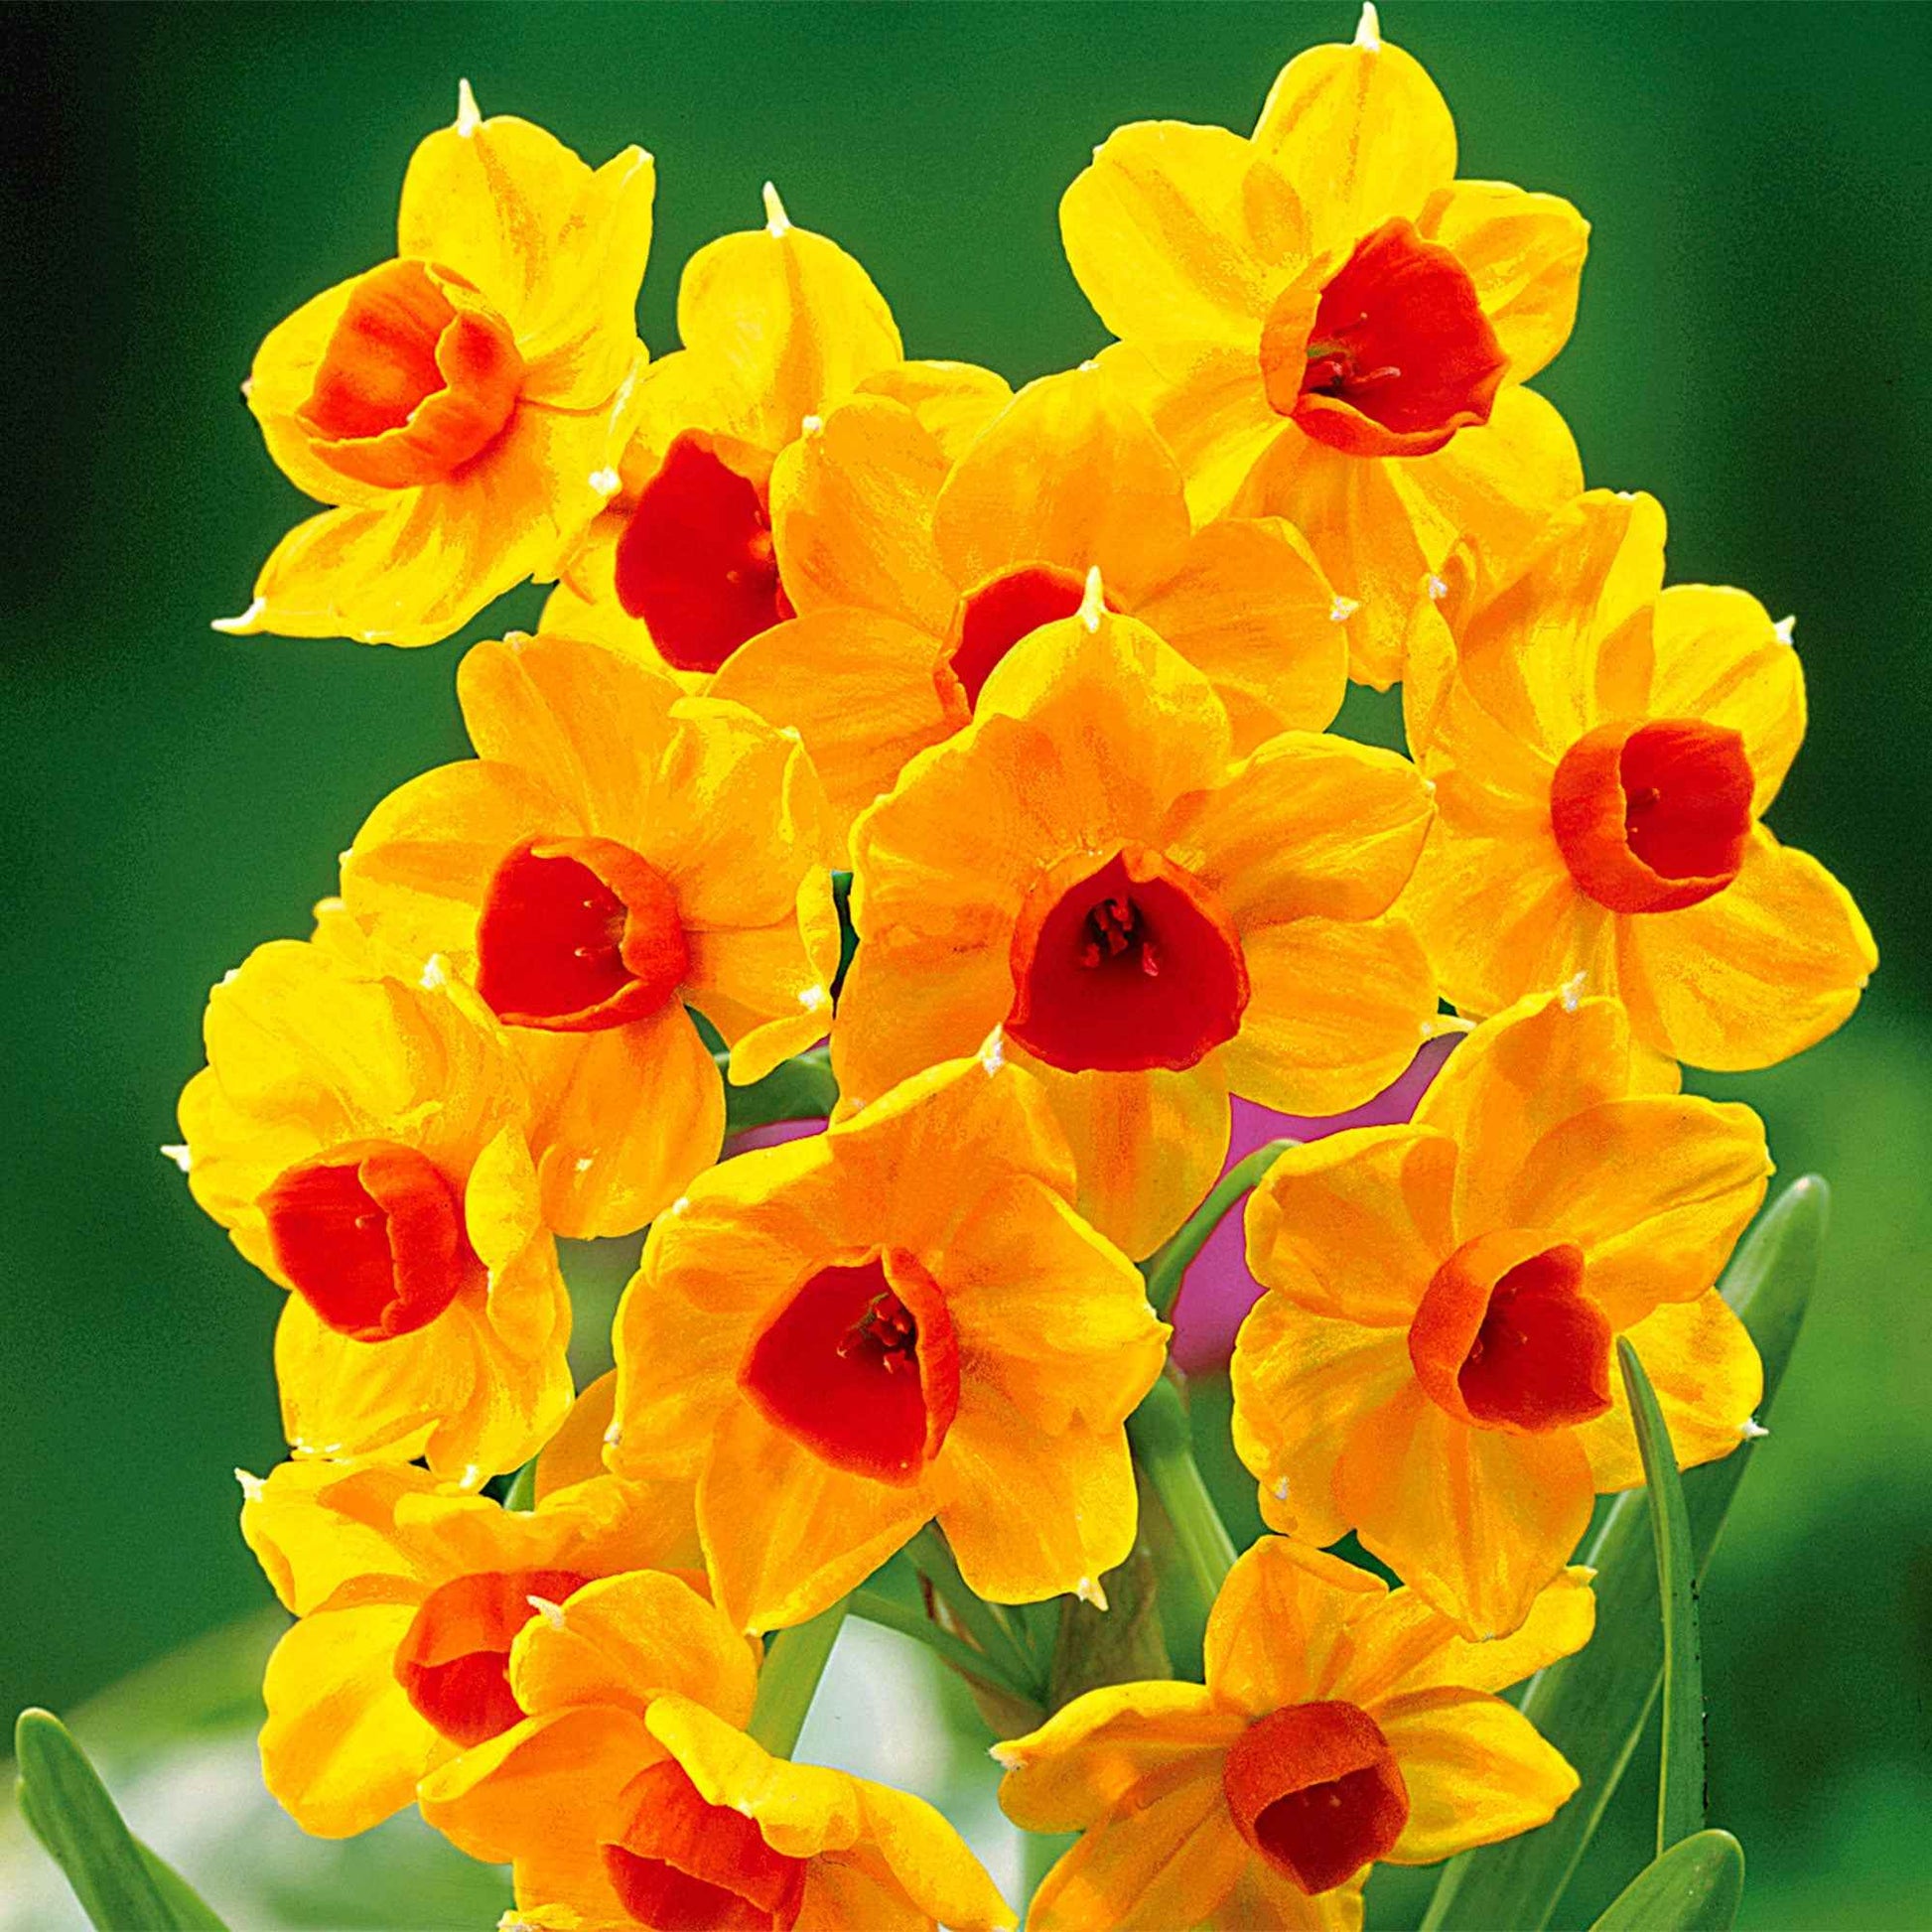 5x Narcisse 'Grand Soleil d'Or' orangé-jaune - Bulbes de fleurs par catégorie